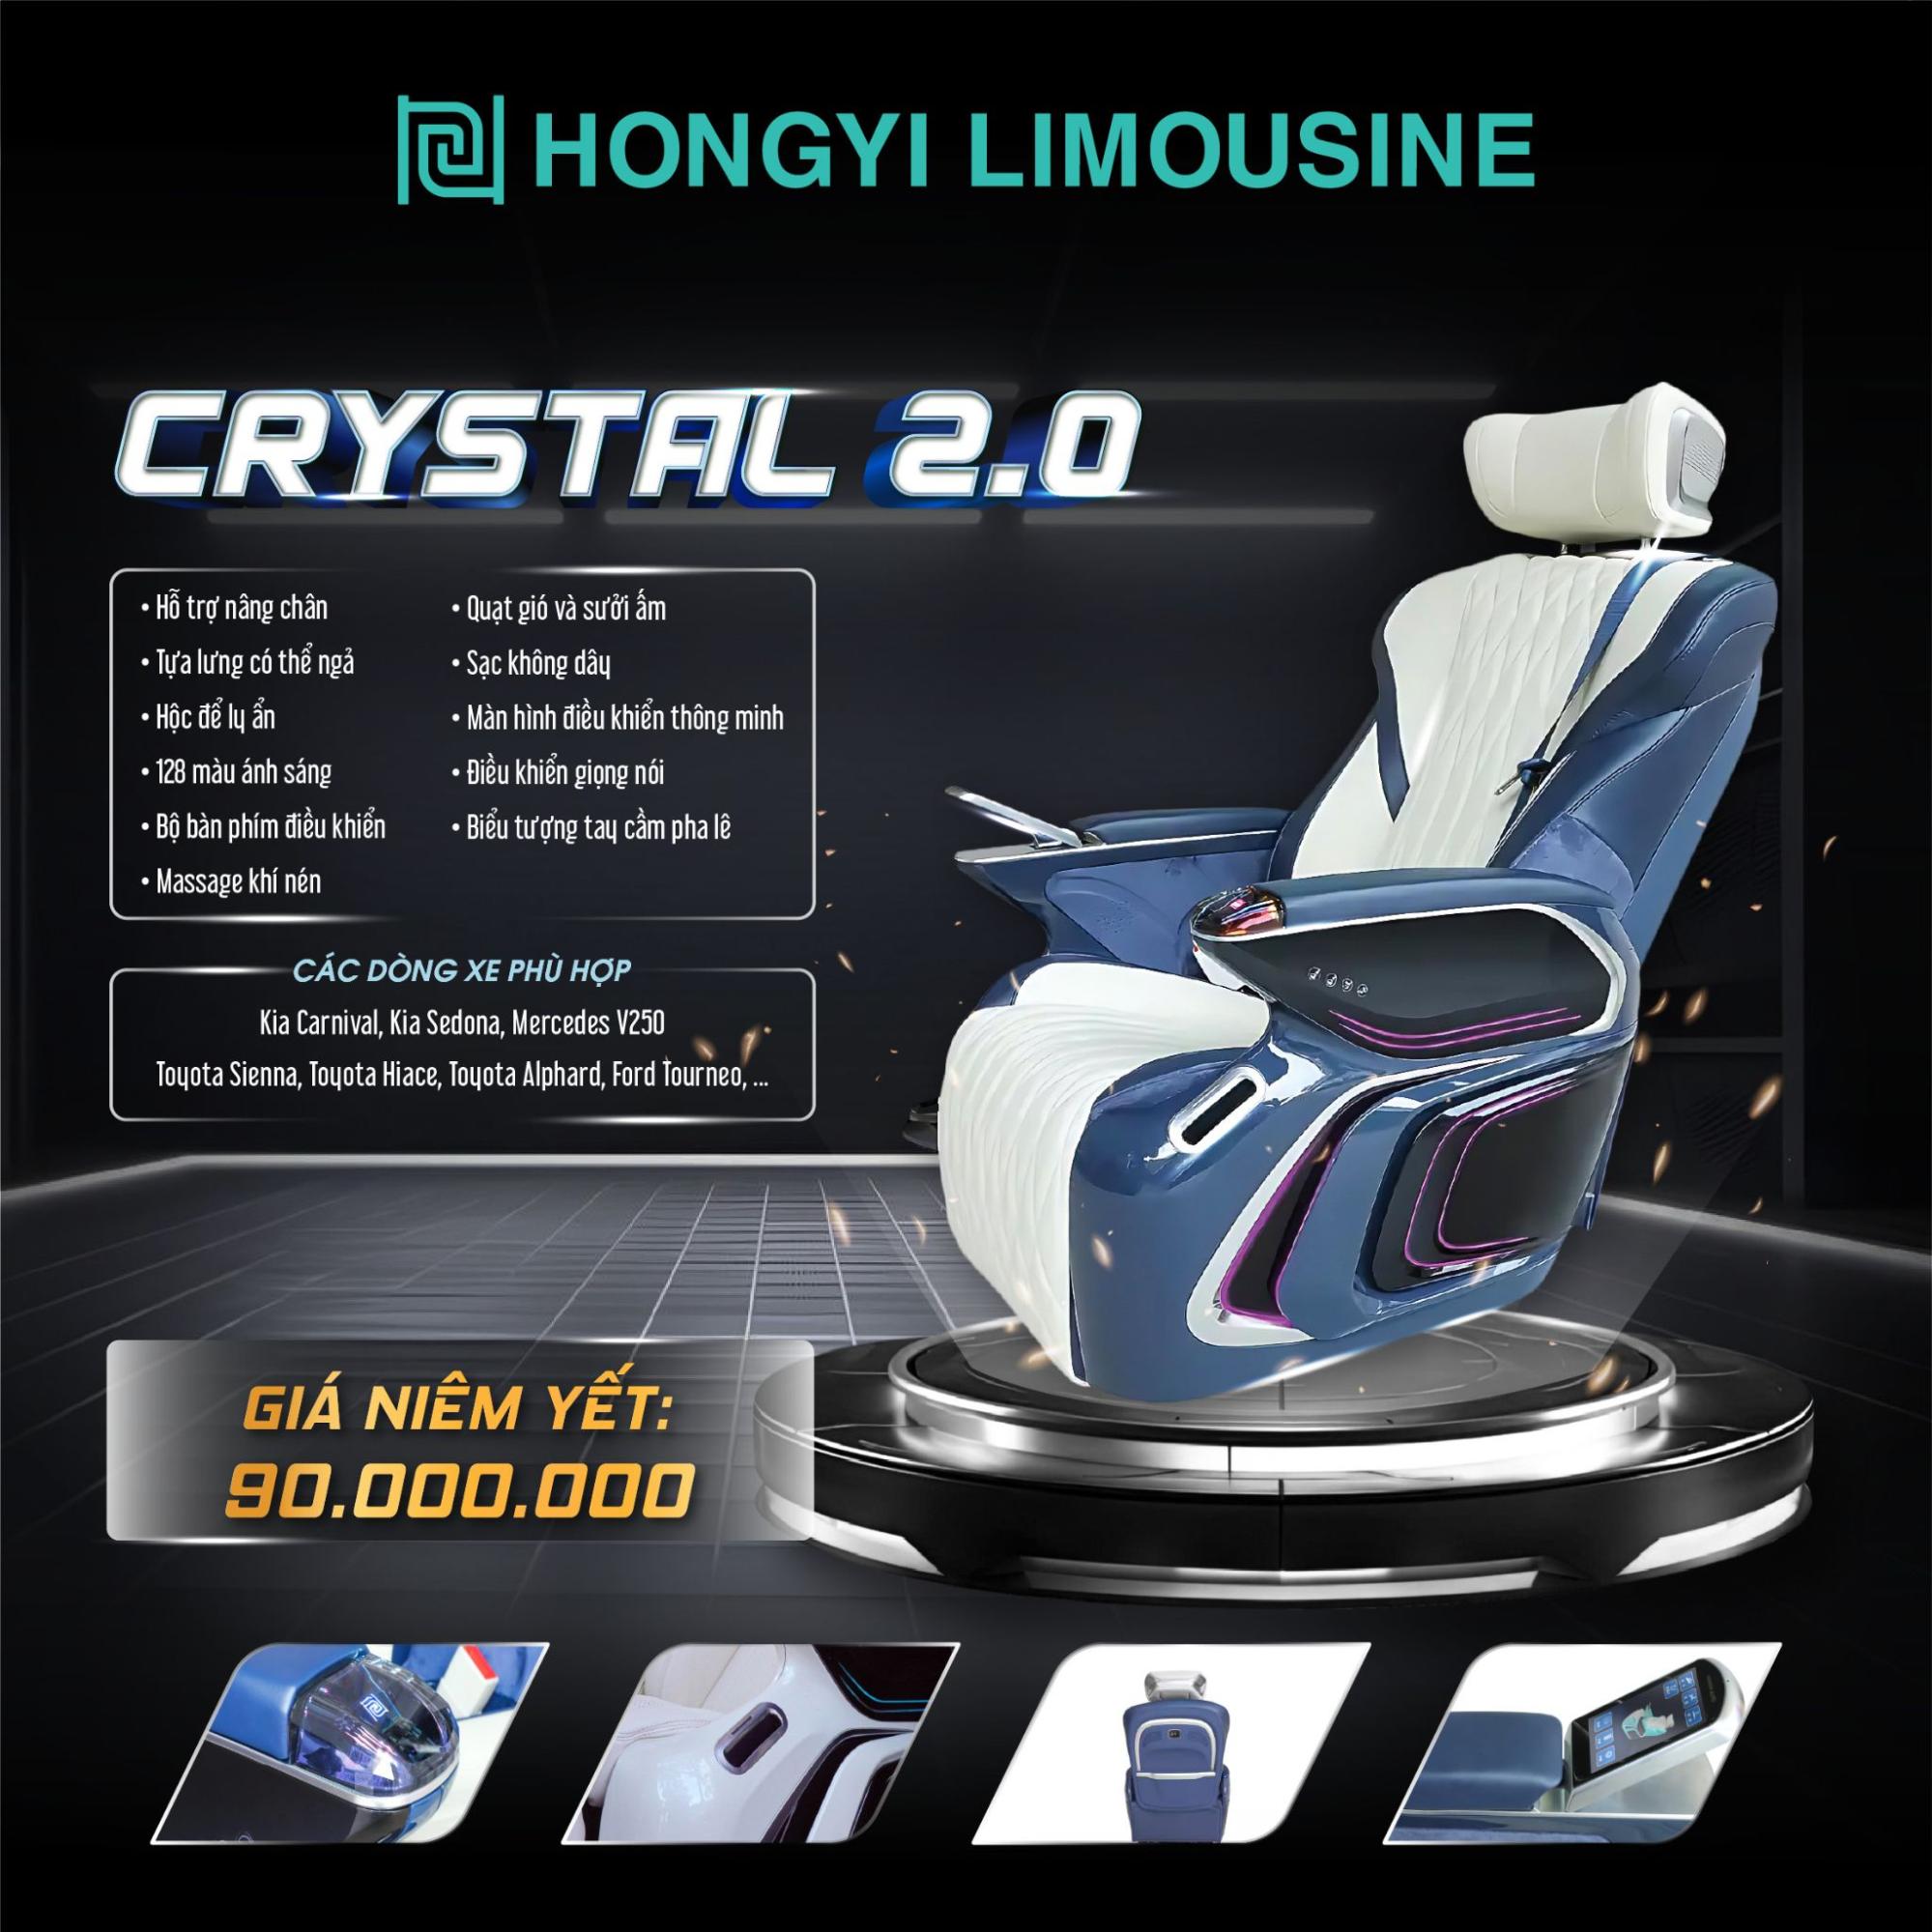 Ghế Limousine Crystal 2.0 thể hiện sự đẳng cấp 